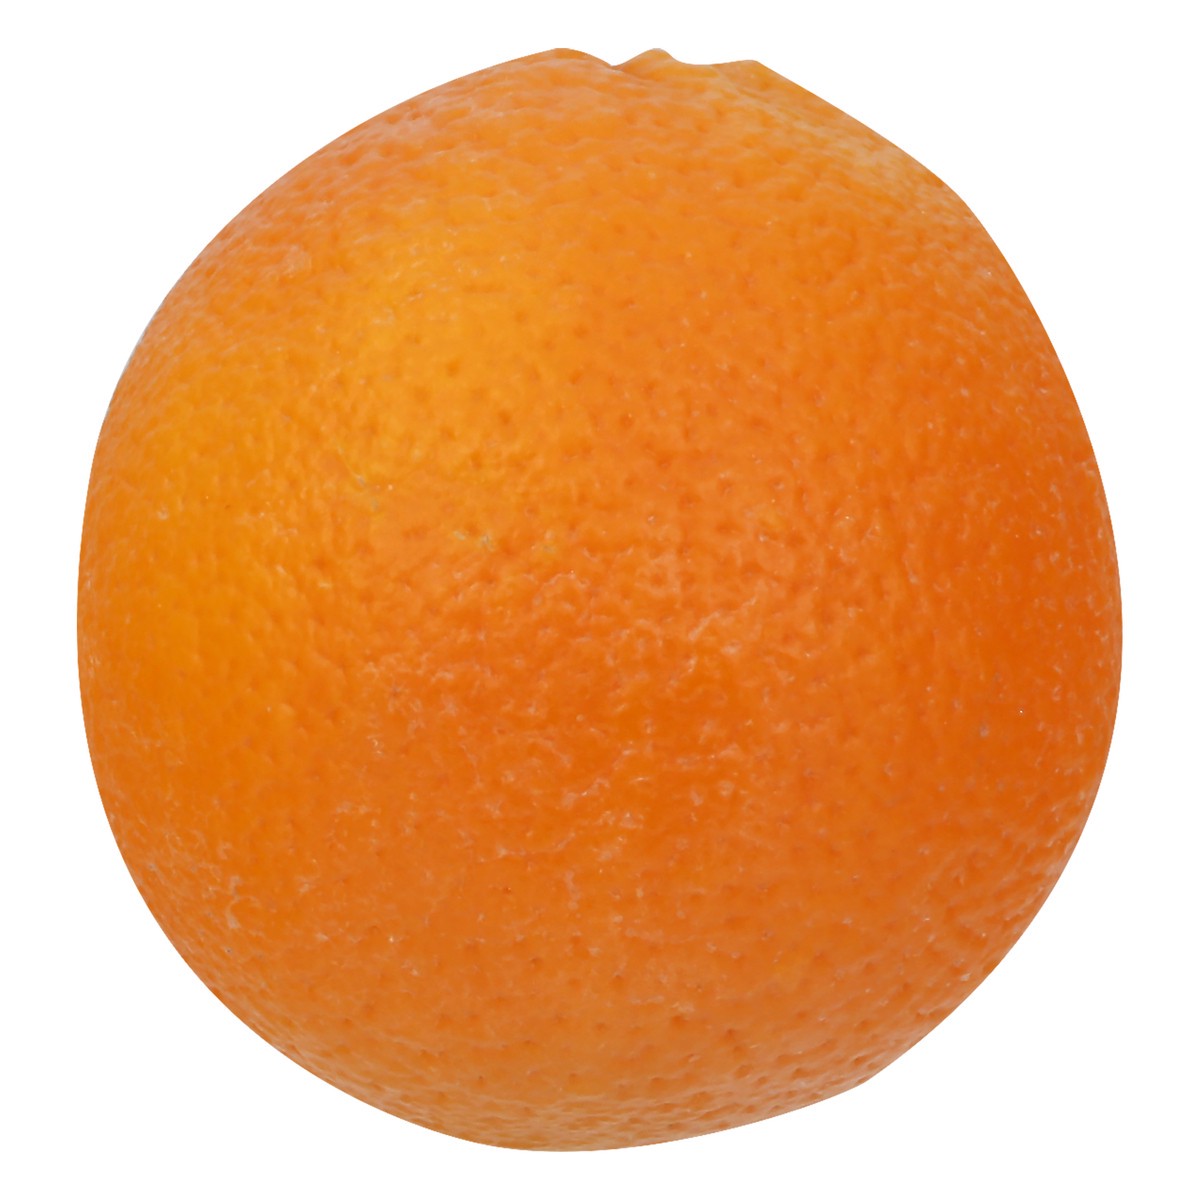 slide 1 of 1, Navel Orange, 4 lb